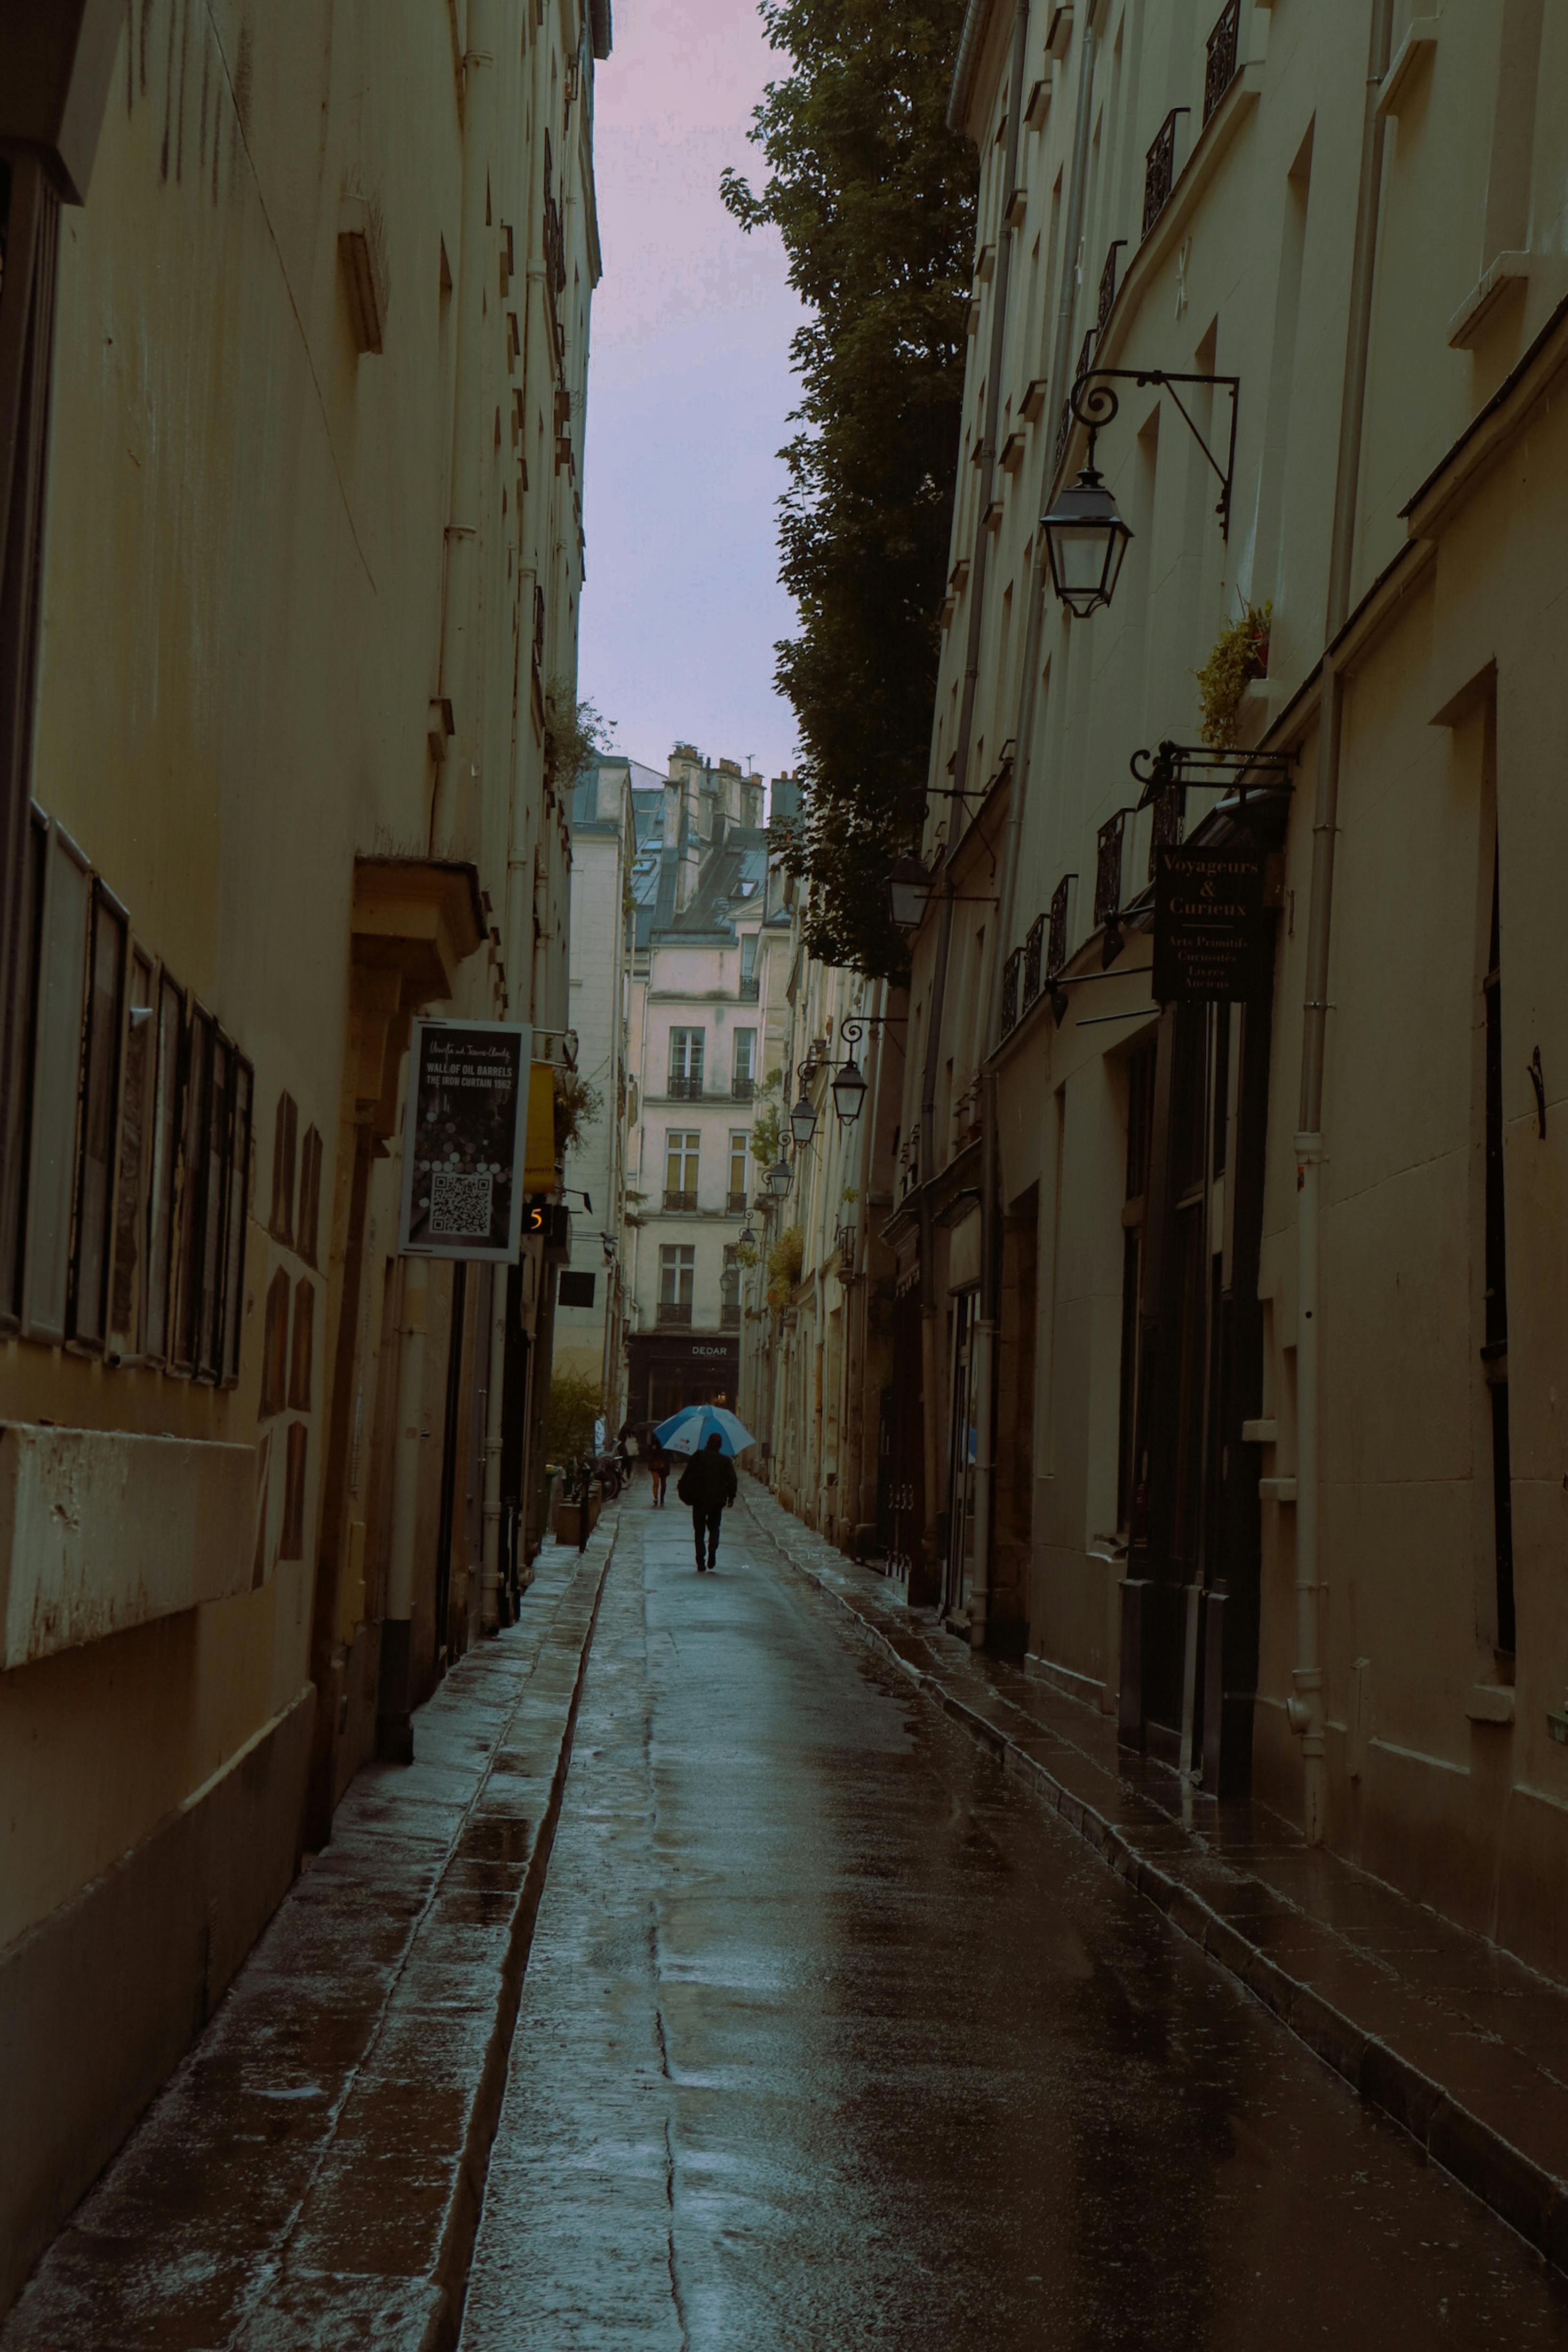 a person walking down a narrow street in the rain